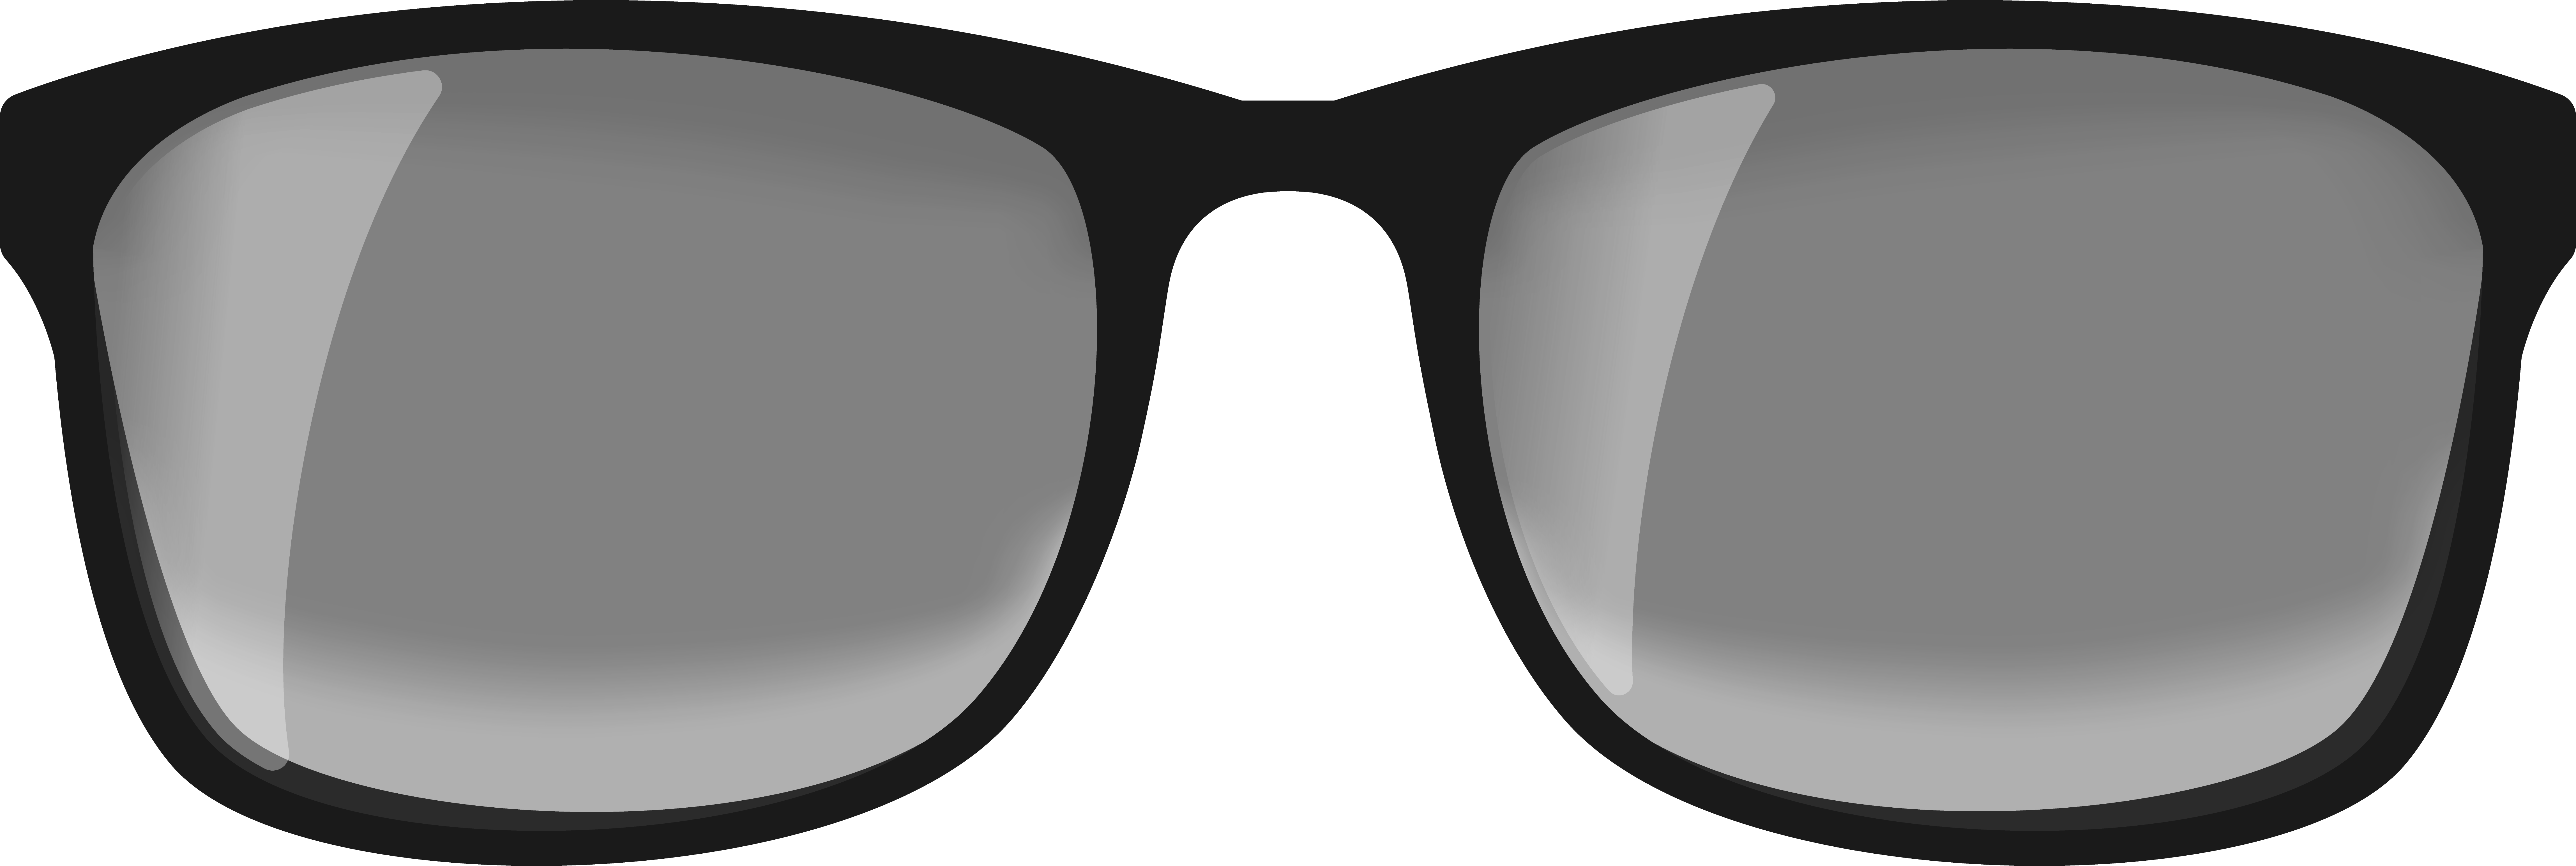 Black-Frame-Glasses-with-Transition-Lenses